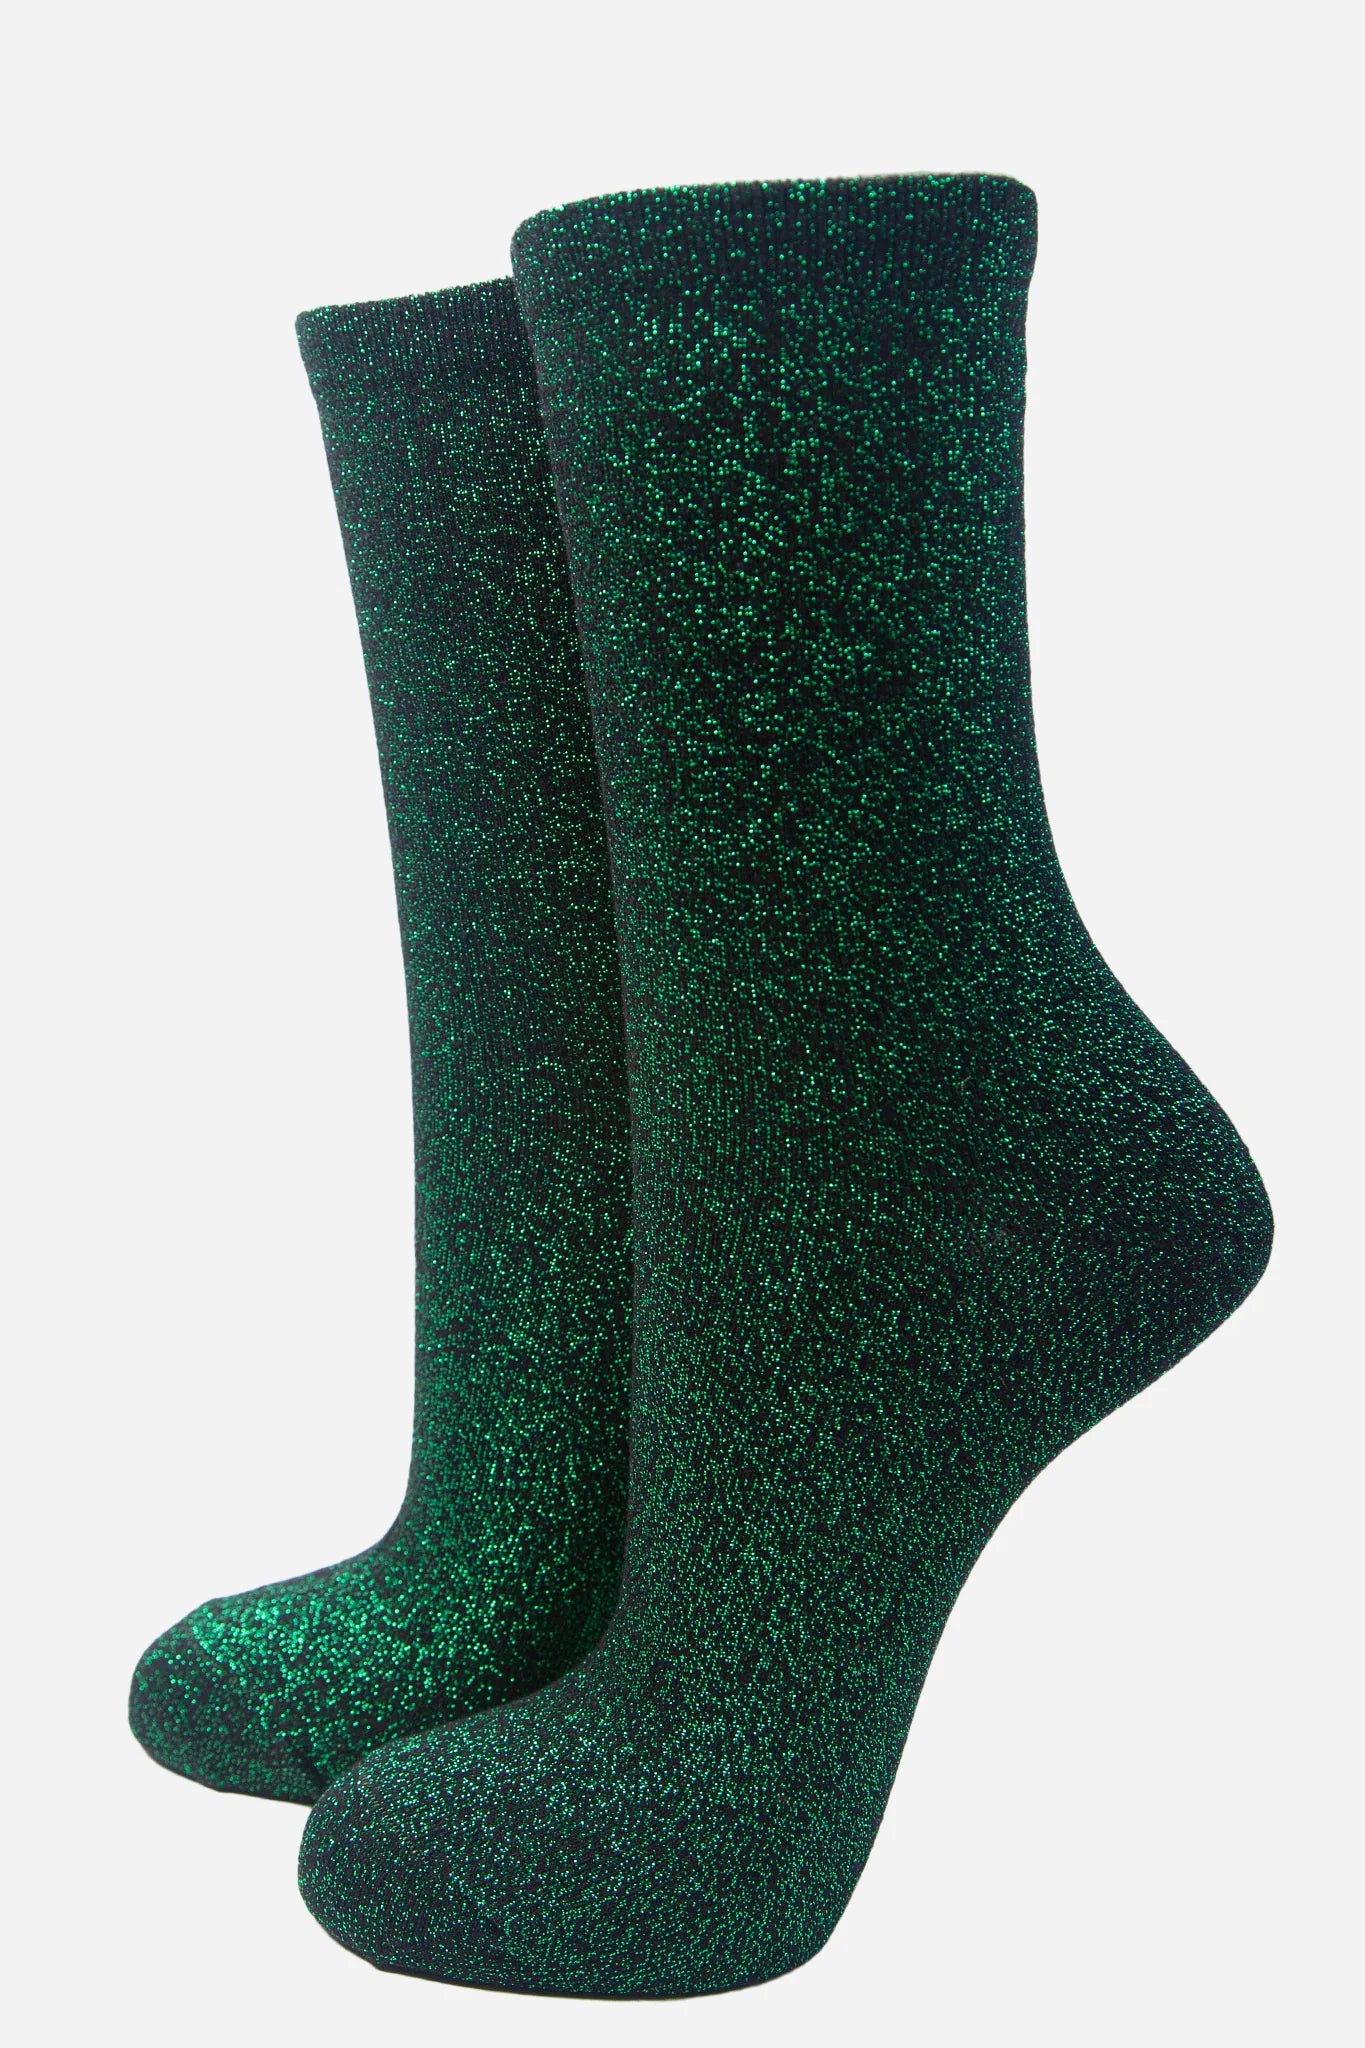 Black Bright Green All Over Glitter Socks